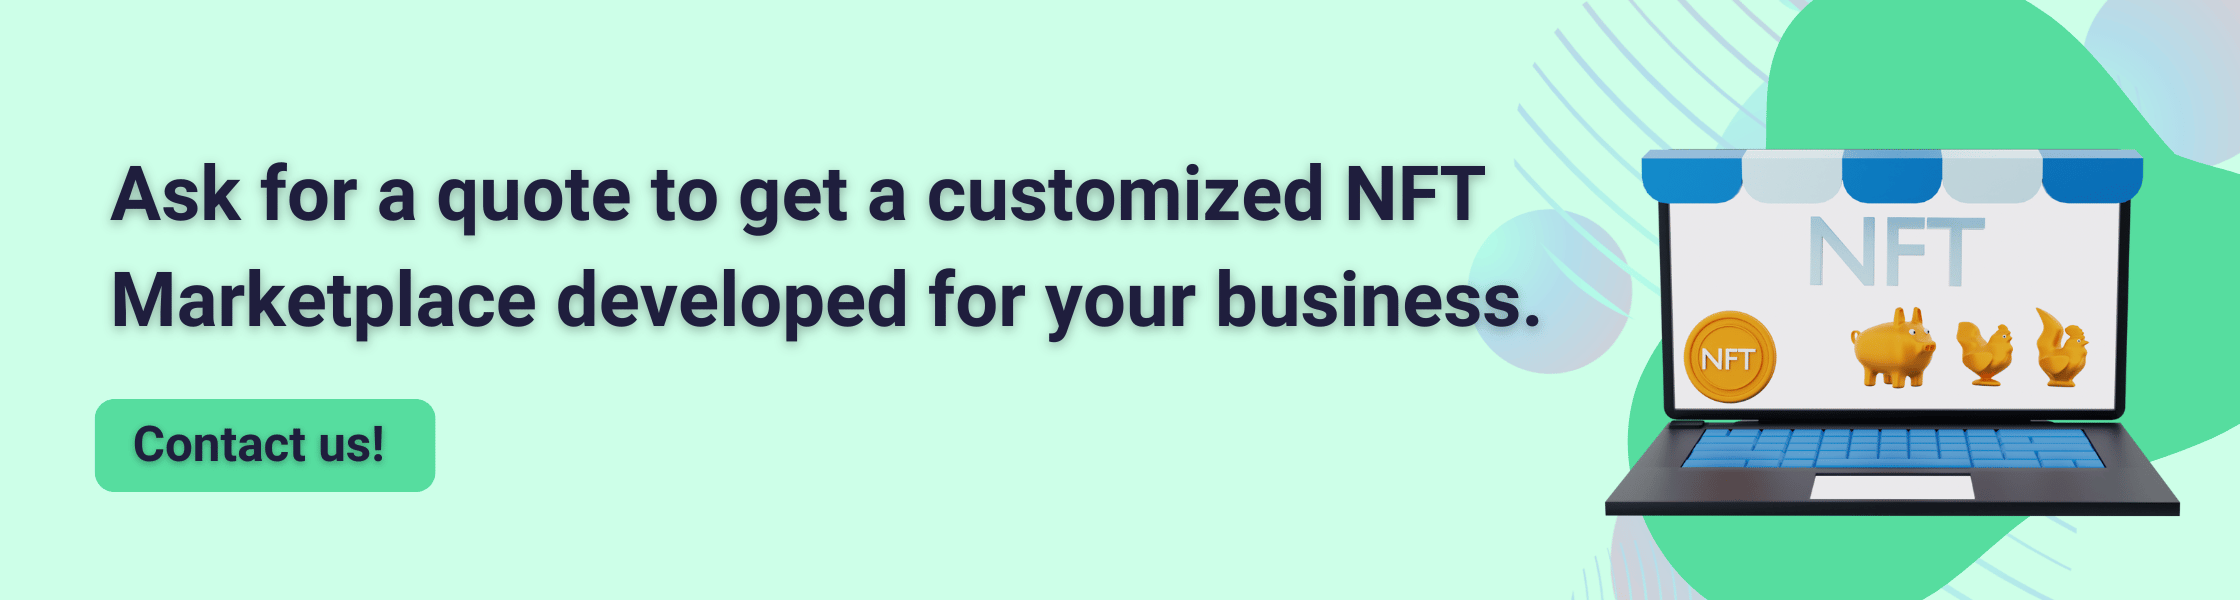 Customized NFT Marketplace